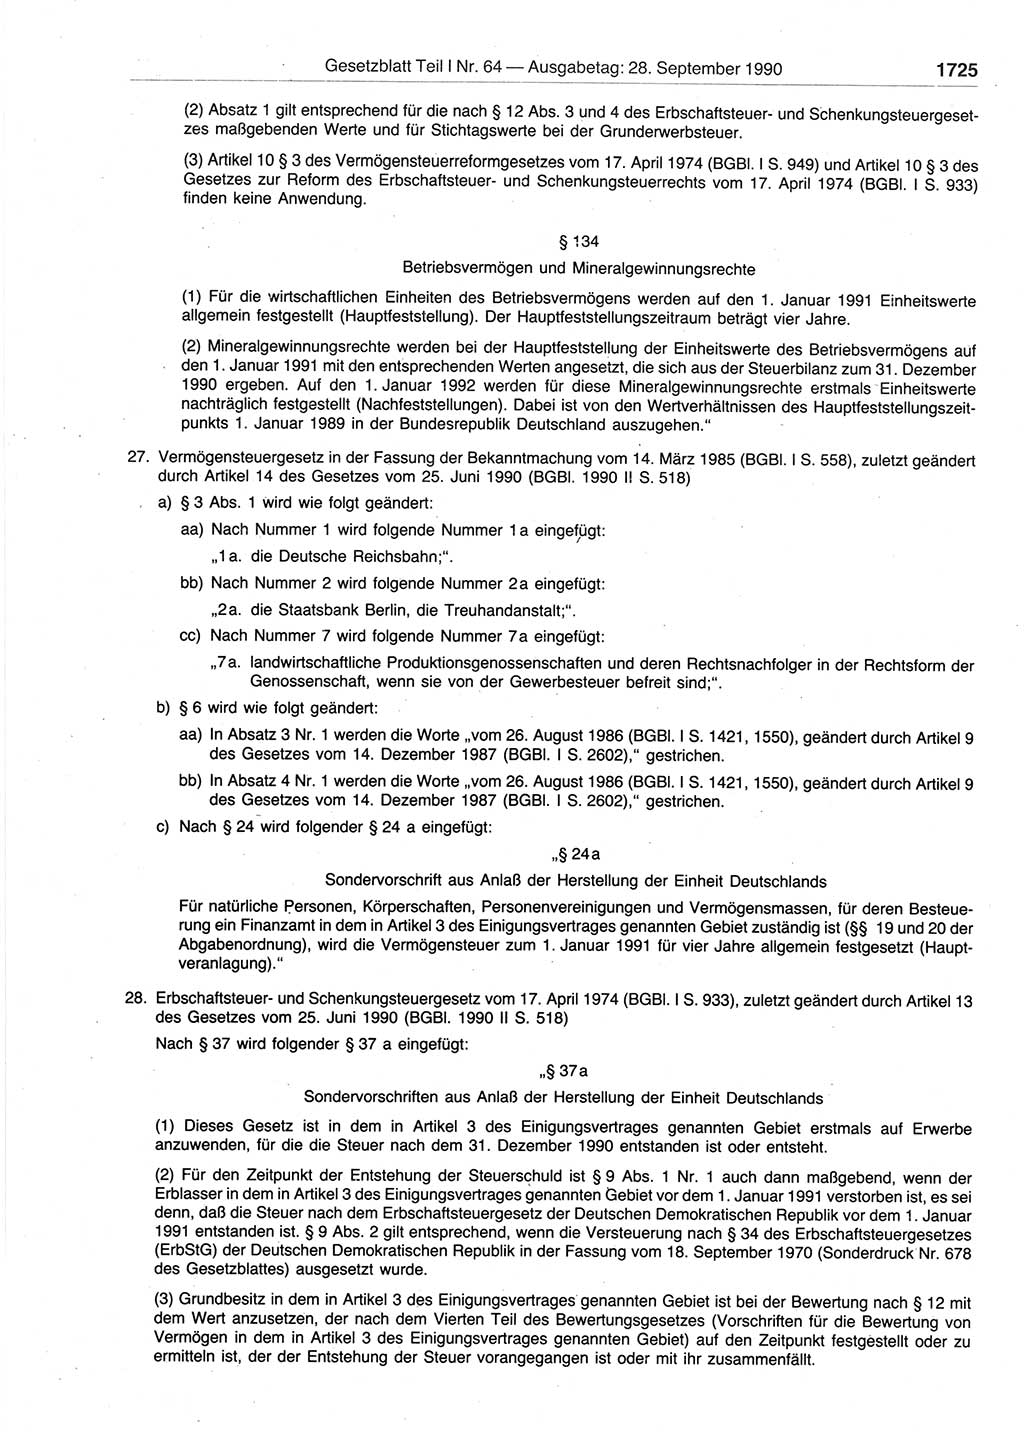 Gesetzblatt (GBl.) der Deutschen Demokratischen Republik (DDR) Teil Ⅰ 1990, Seite 1725 (GBl. DDR Ⅰ 1990, S. 1725)